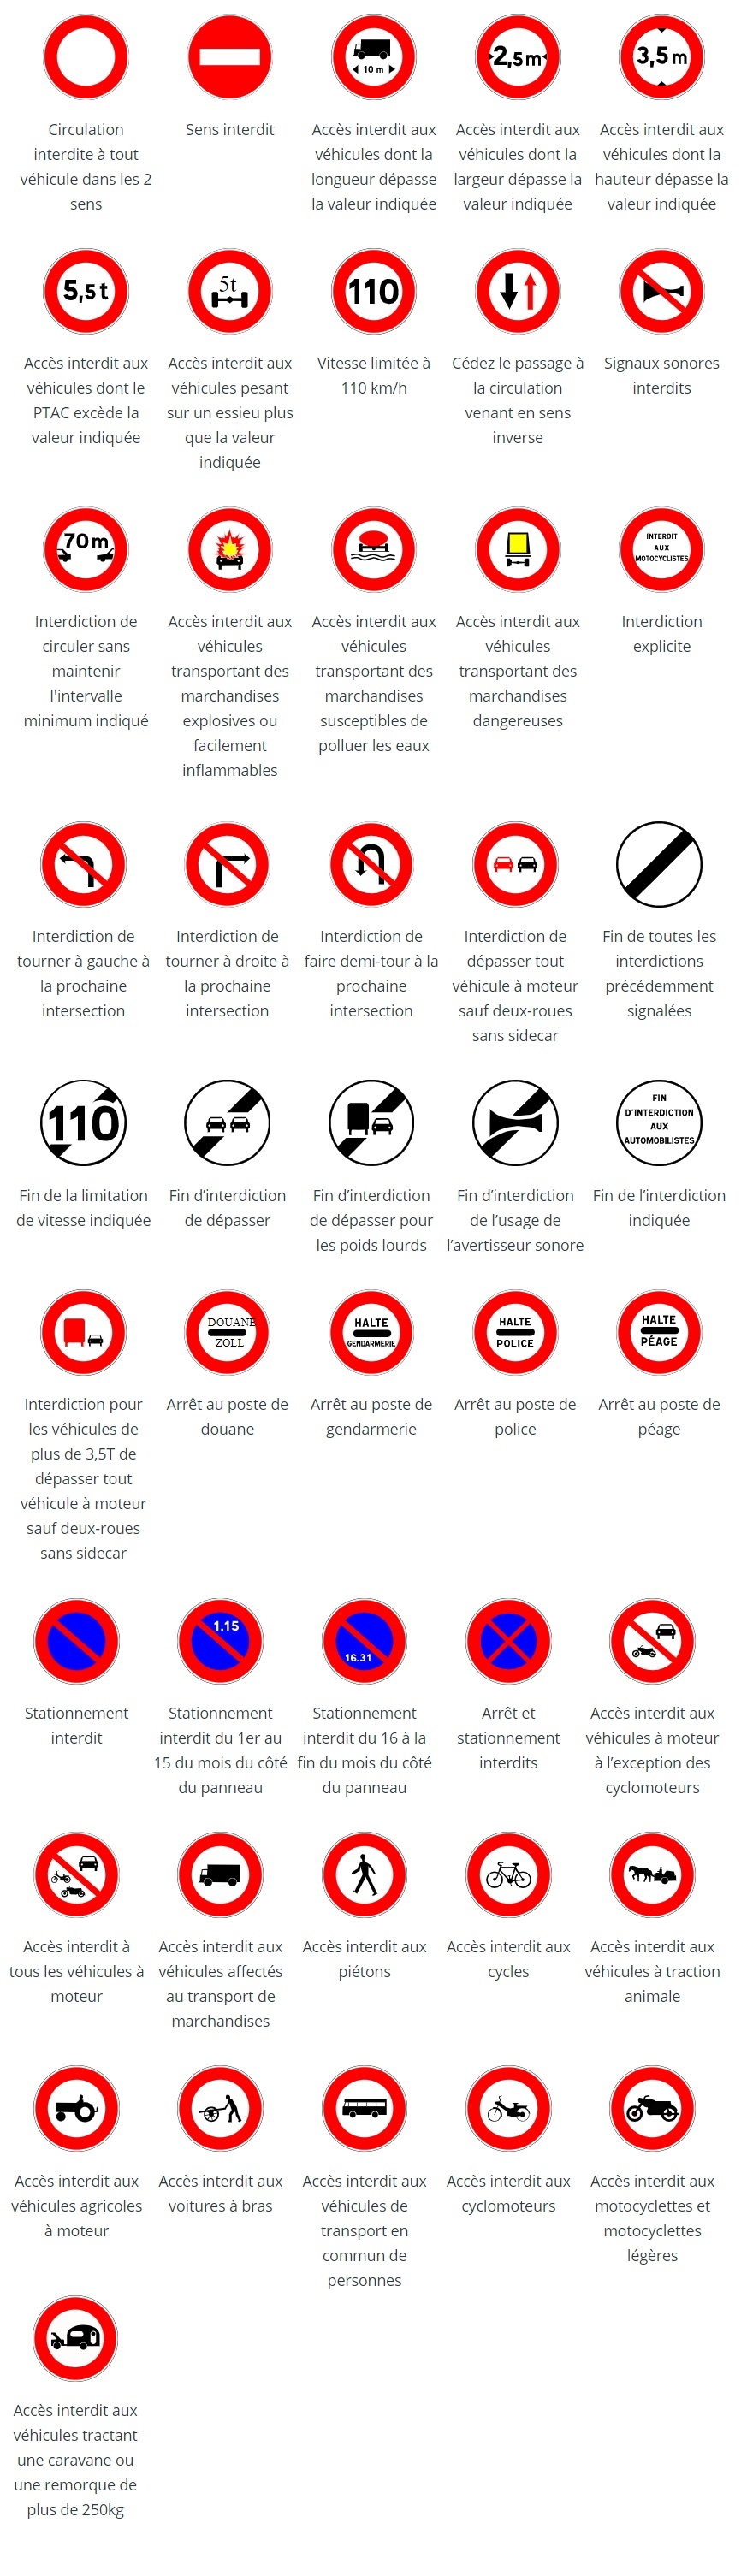 Les panneaux d'interdiction du code de la route